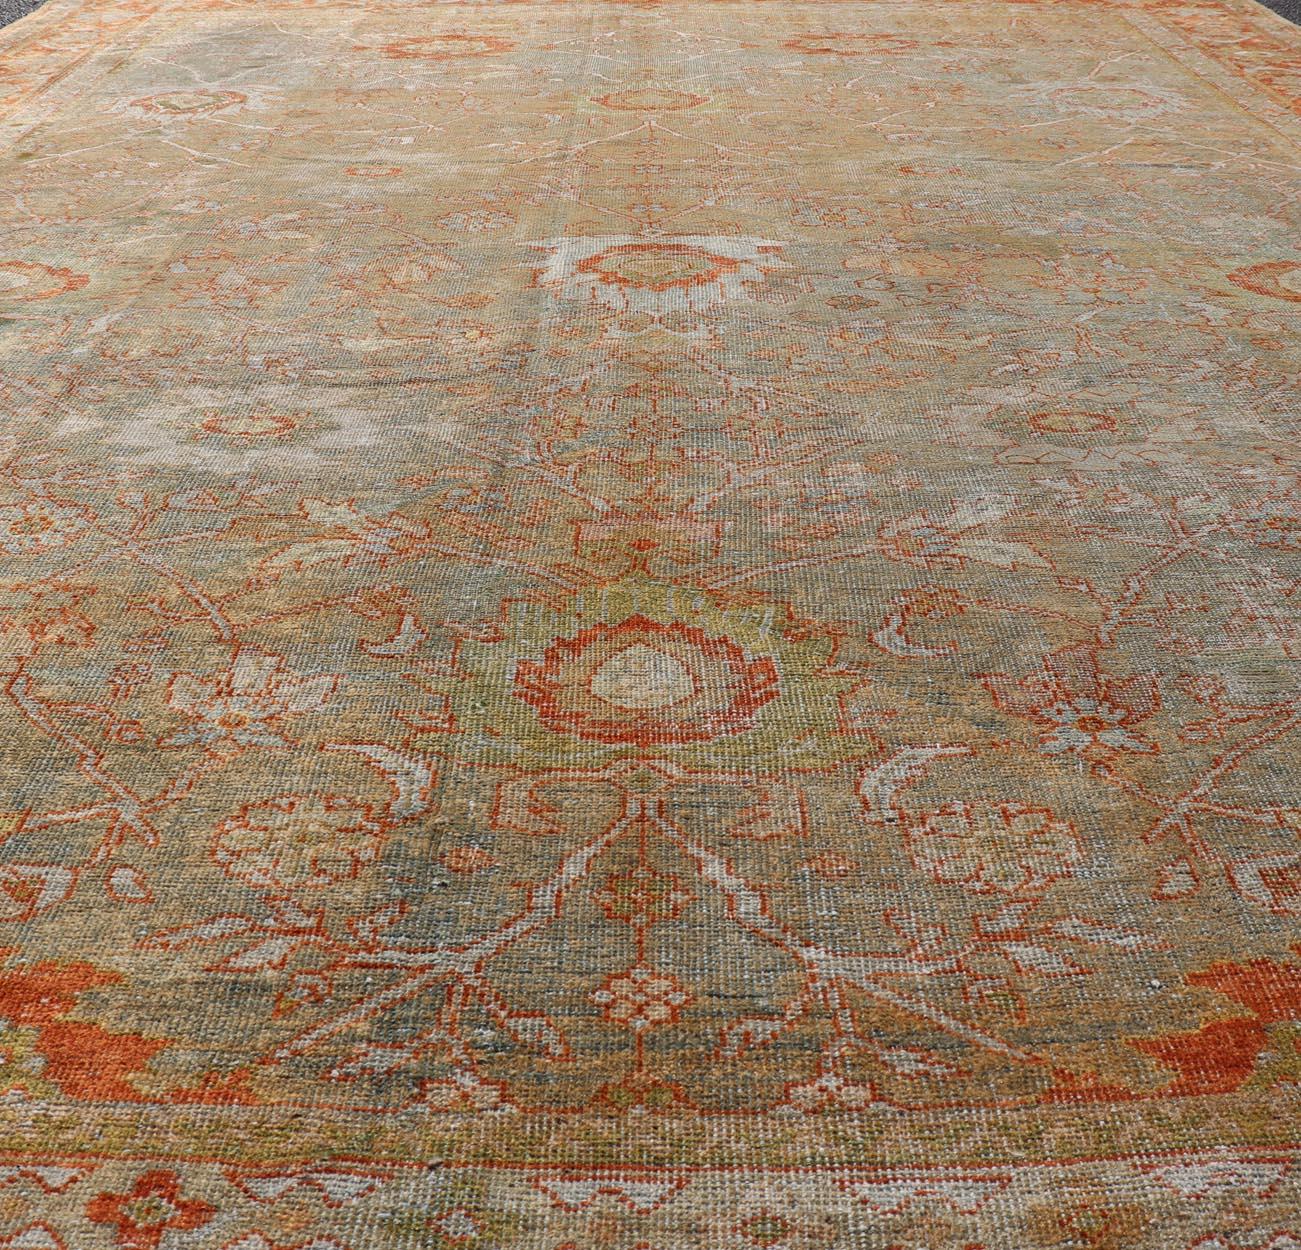 Antiker persischer Distressed Sultanabad Teppich in Hellgrün, Lt. Blau, Grün, Rot. Keivan Woven Arts / Teppich W22-0406-15480, Herkunftsland / Art: Iran / Sultanabad, um 1900. 
Maße: 8'8 x 12'2 
Dieser wunderschöne, antike persische